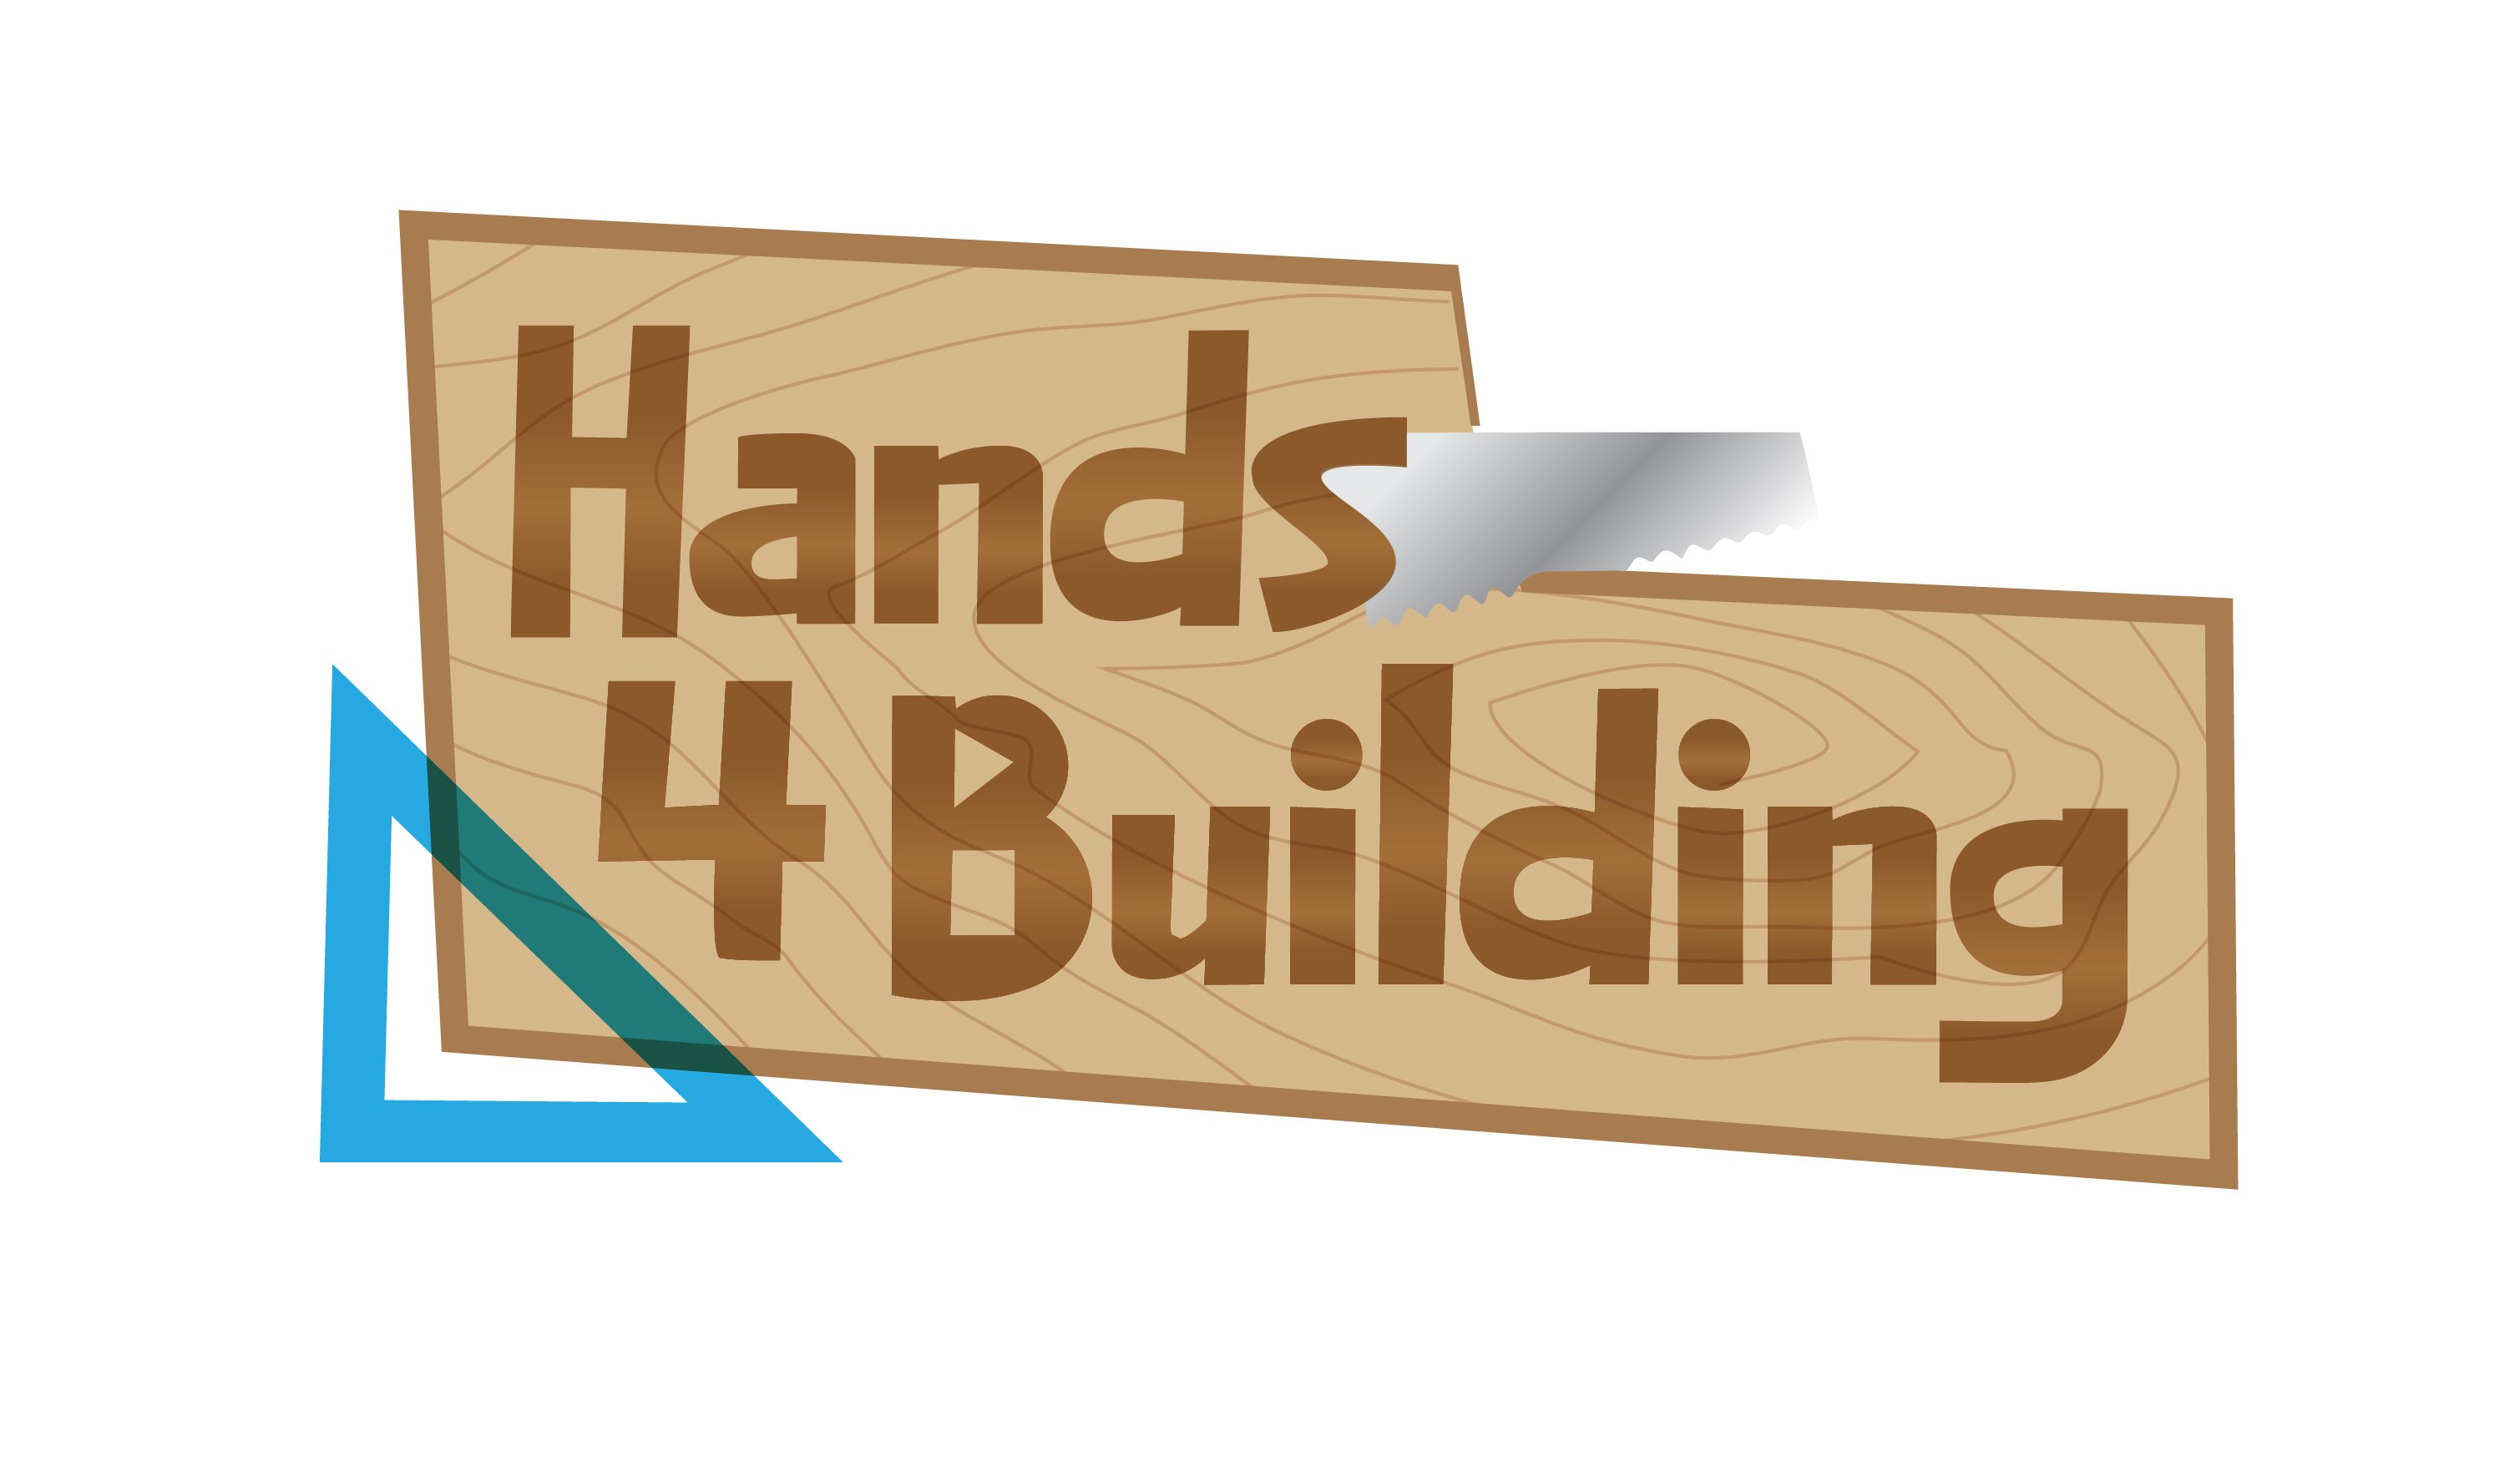 Hands 4 Building logo